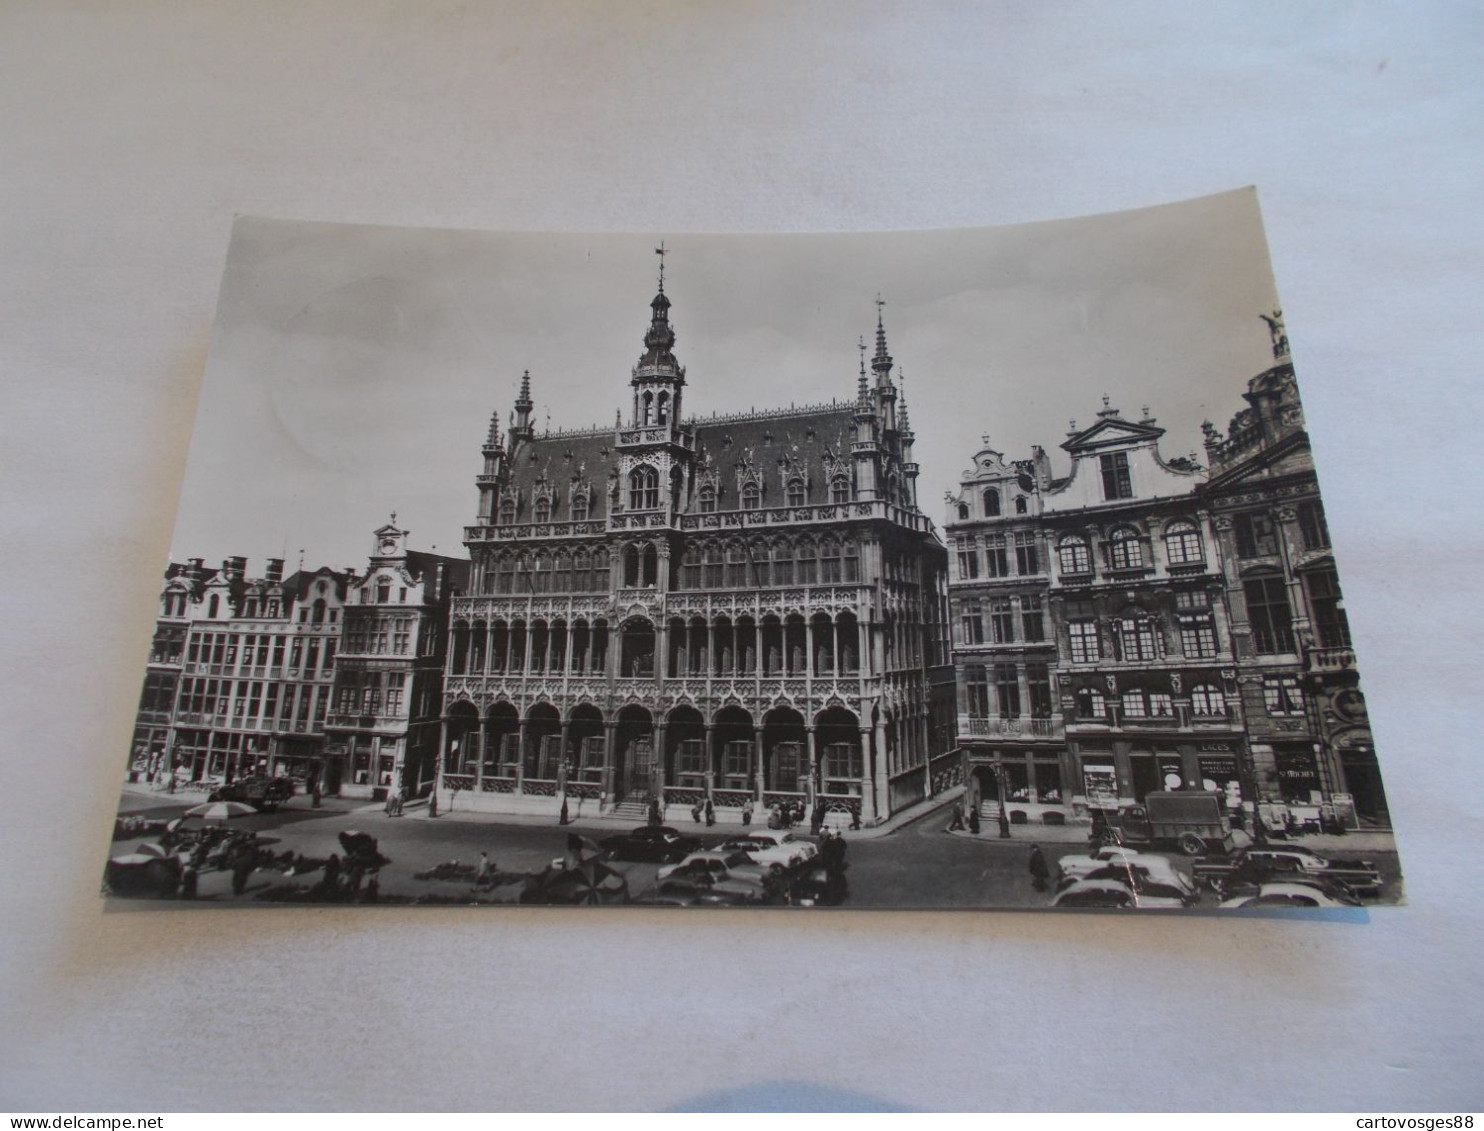 BRUXELLES  ( BELGIQUE )  GRAND PLACE  MAISON DU ROI  ANIMEES  VIEILLES AUTOS - Places, Squares